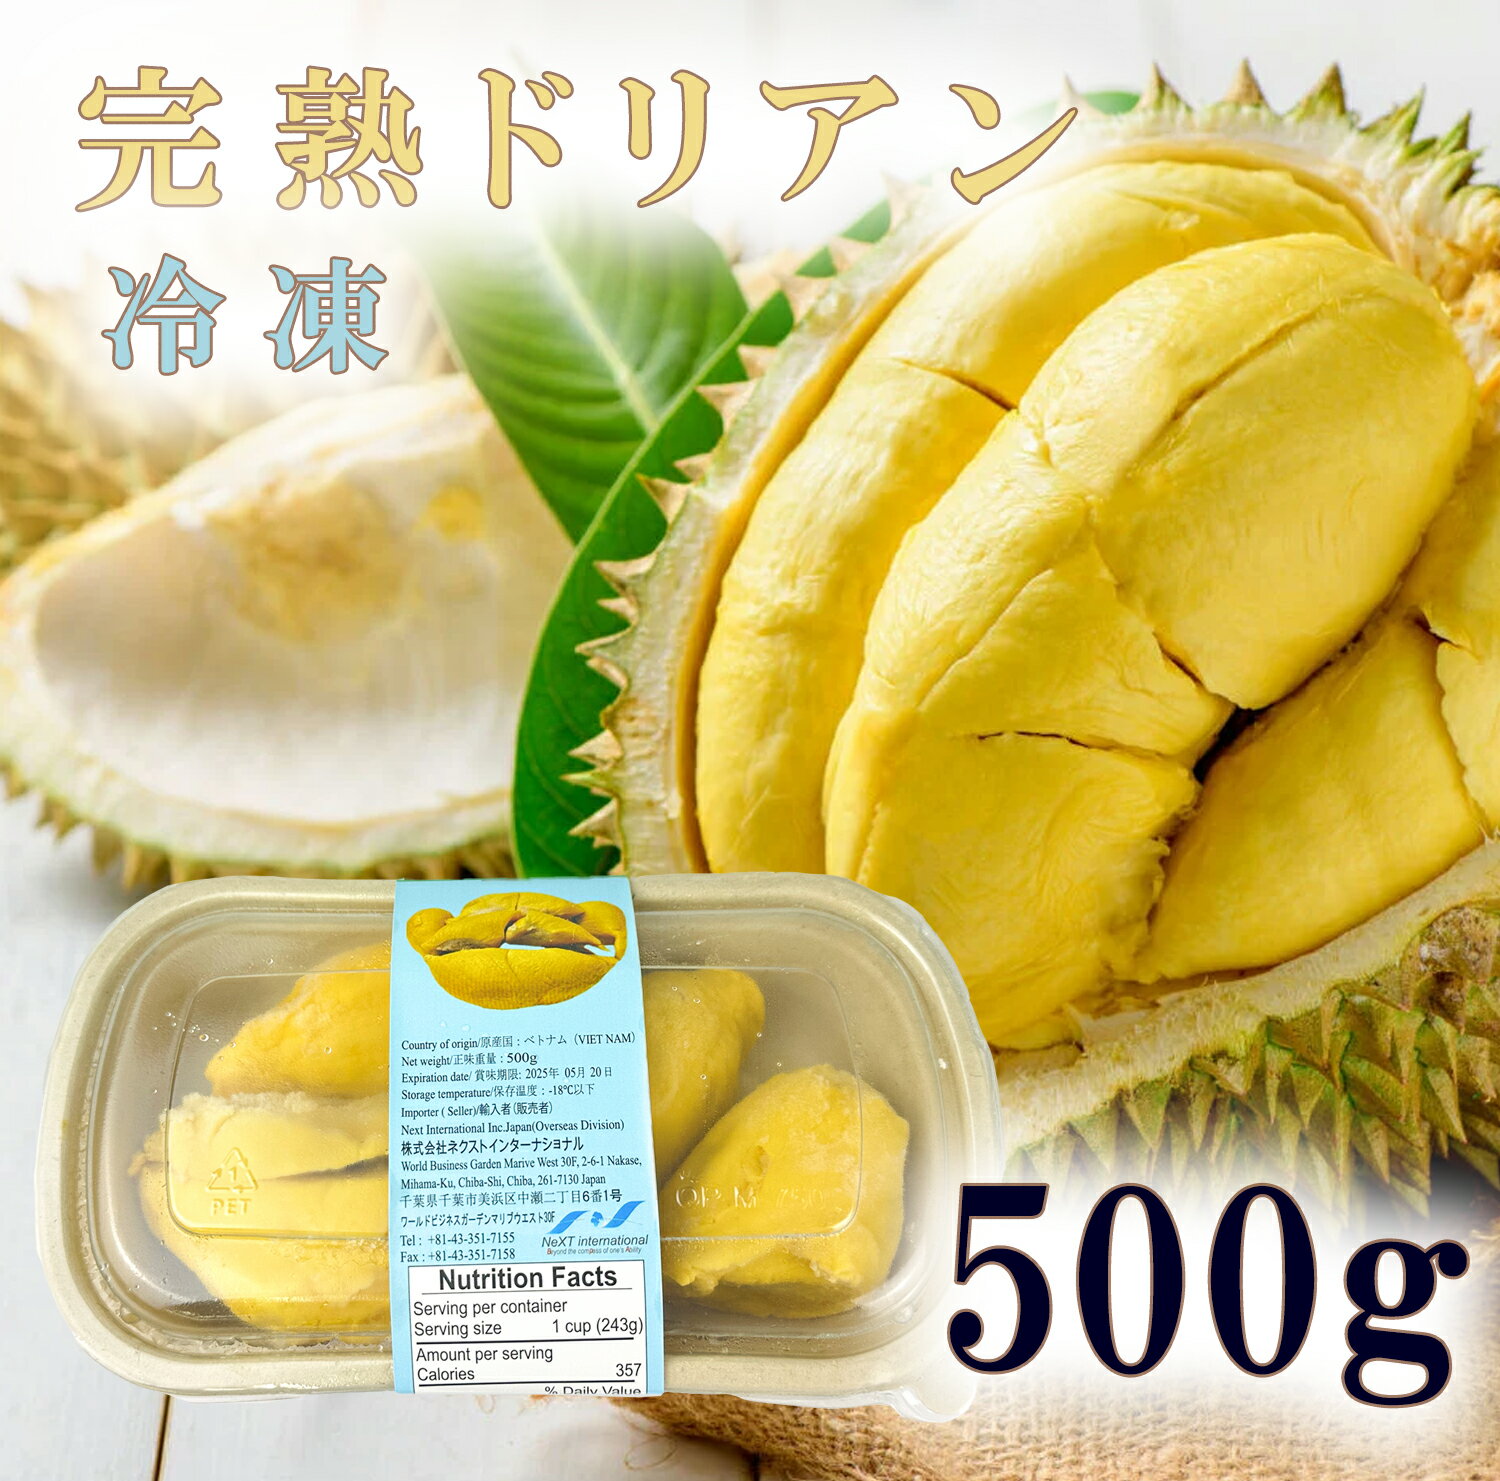 フローズン ドリアン 種付き ベトナム産 Frozen durian 冷凍ドリアン 冷凍フルーツ 榴連 独特のにおいが有名ですが 美味しさは悪魔的だと例えられる強い甘さが特長です ドリアン 果物の王様ド…